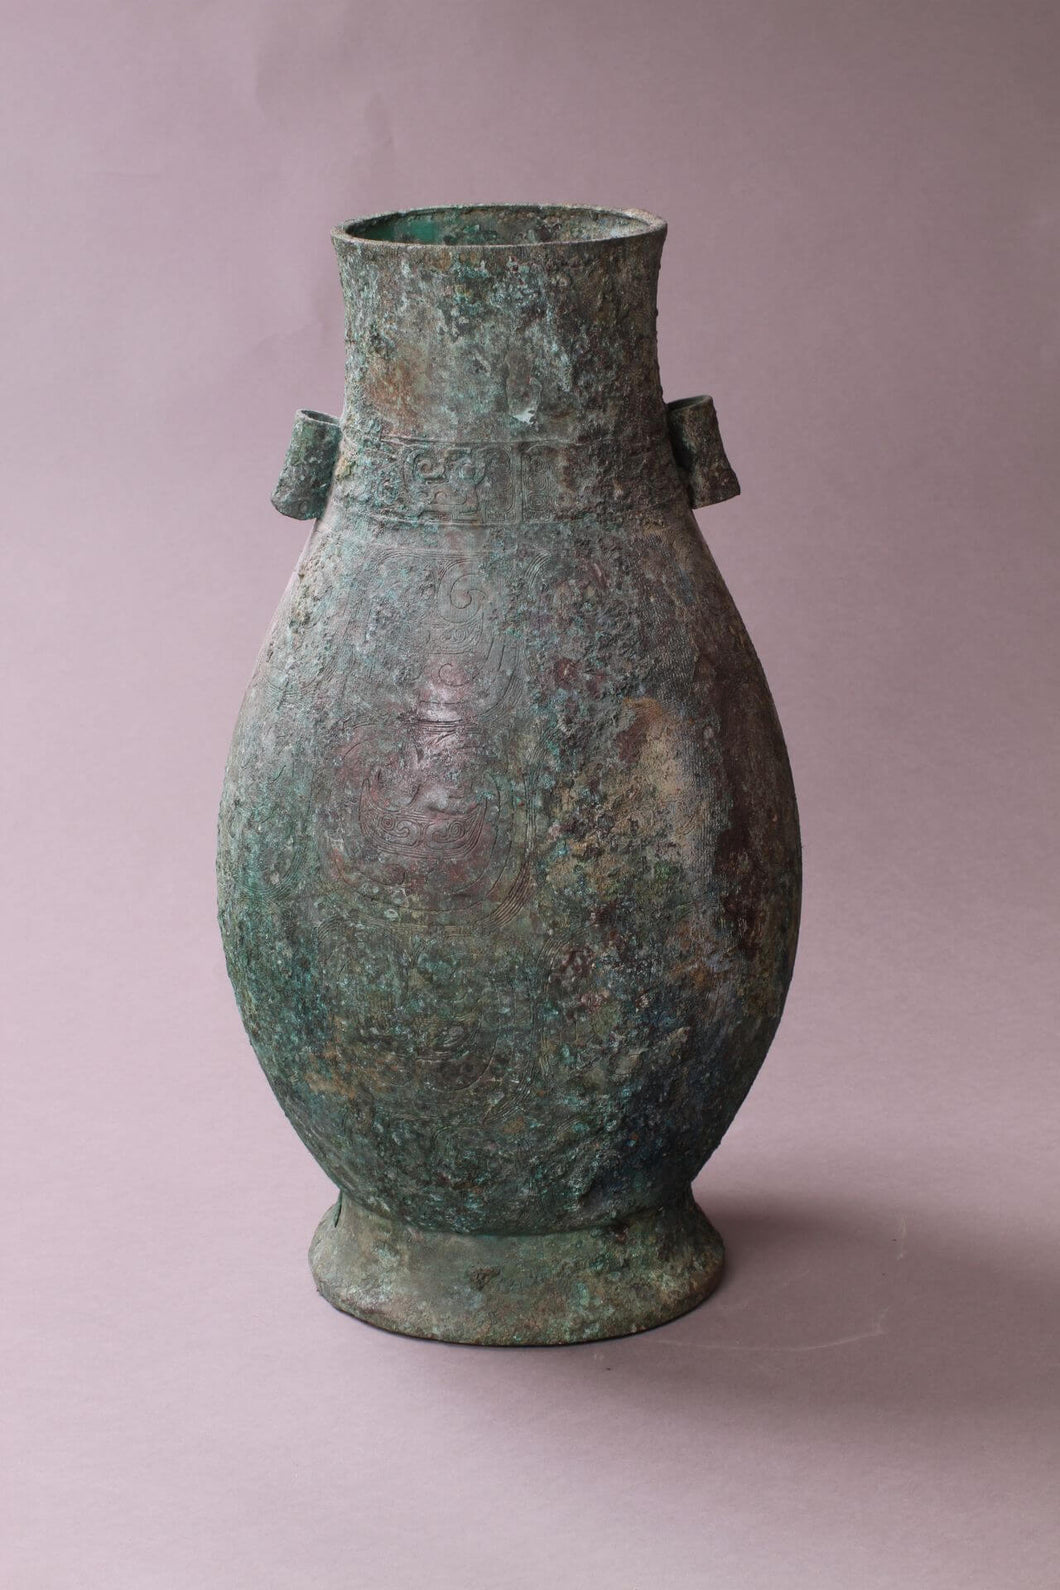 Very Rare Archaic Bronze Vase, 